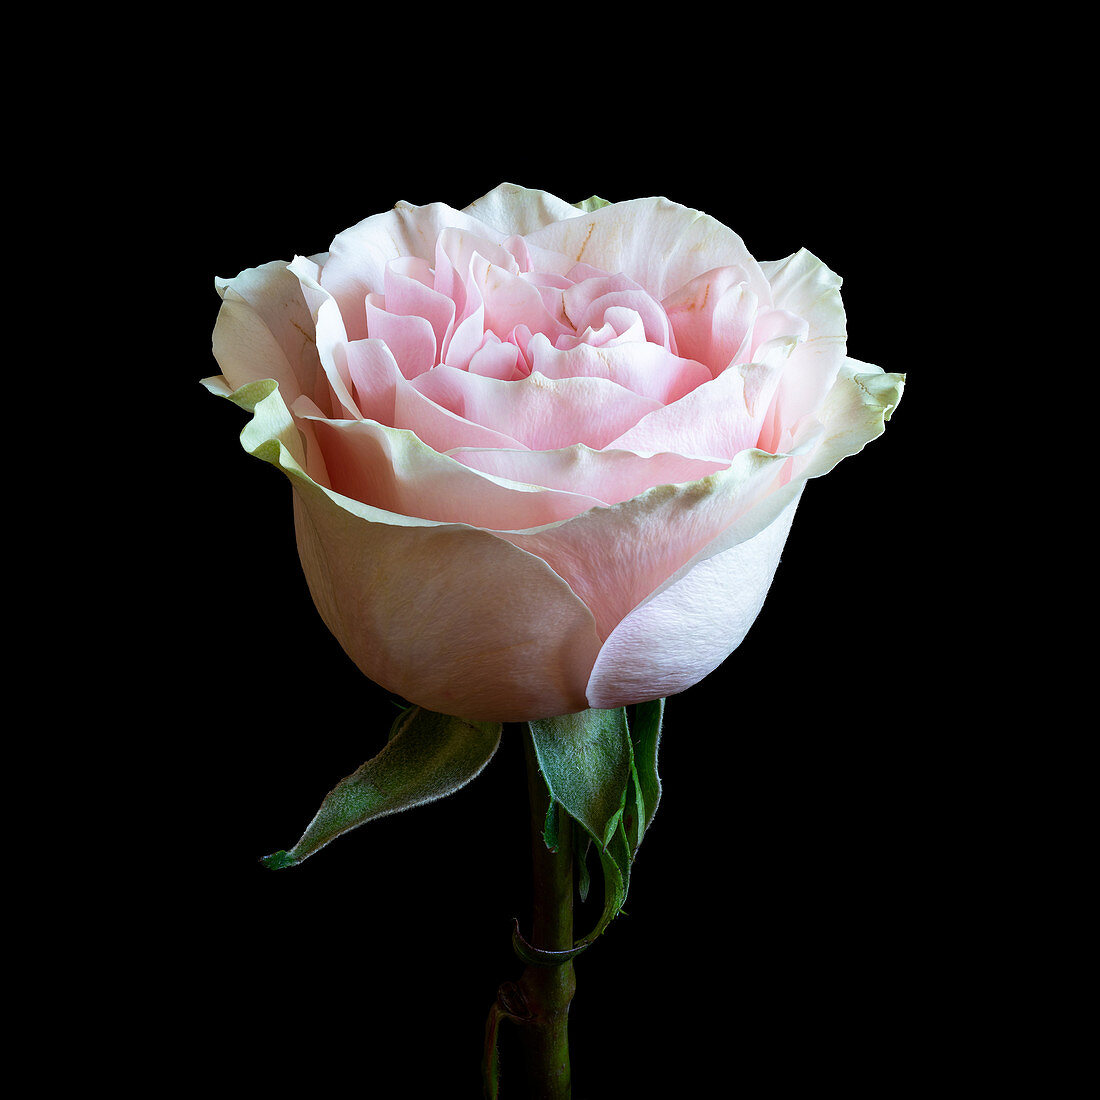 Pale pink rose (Rosa) flower